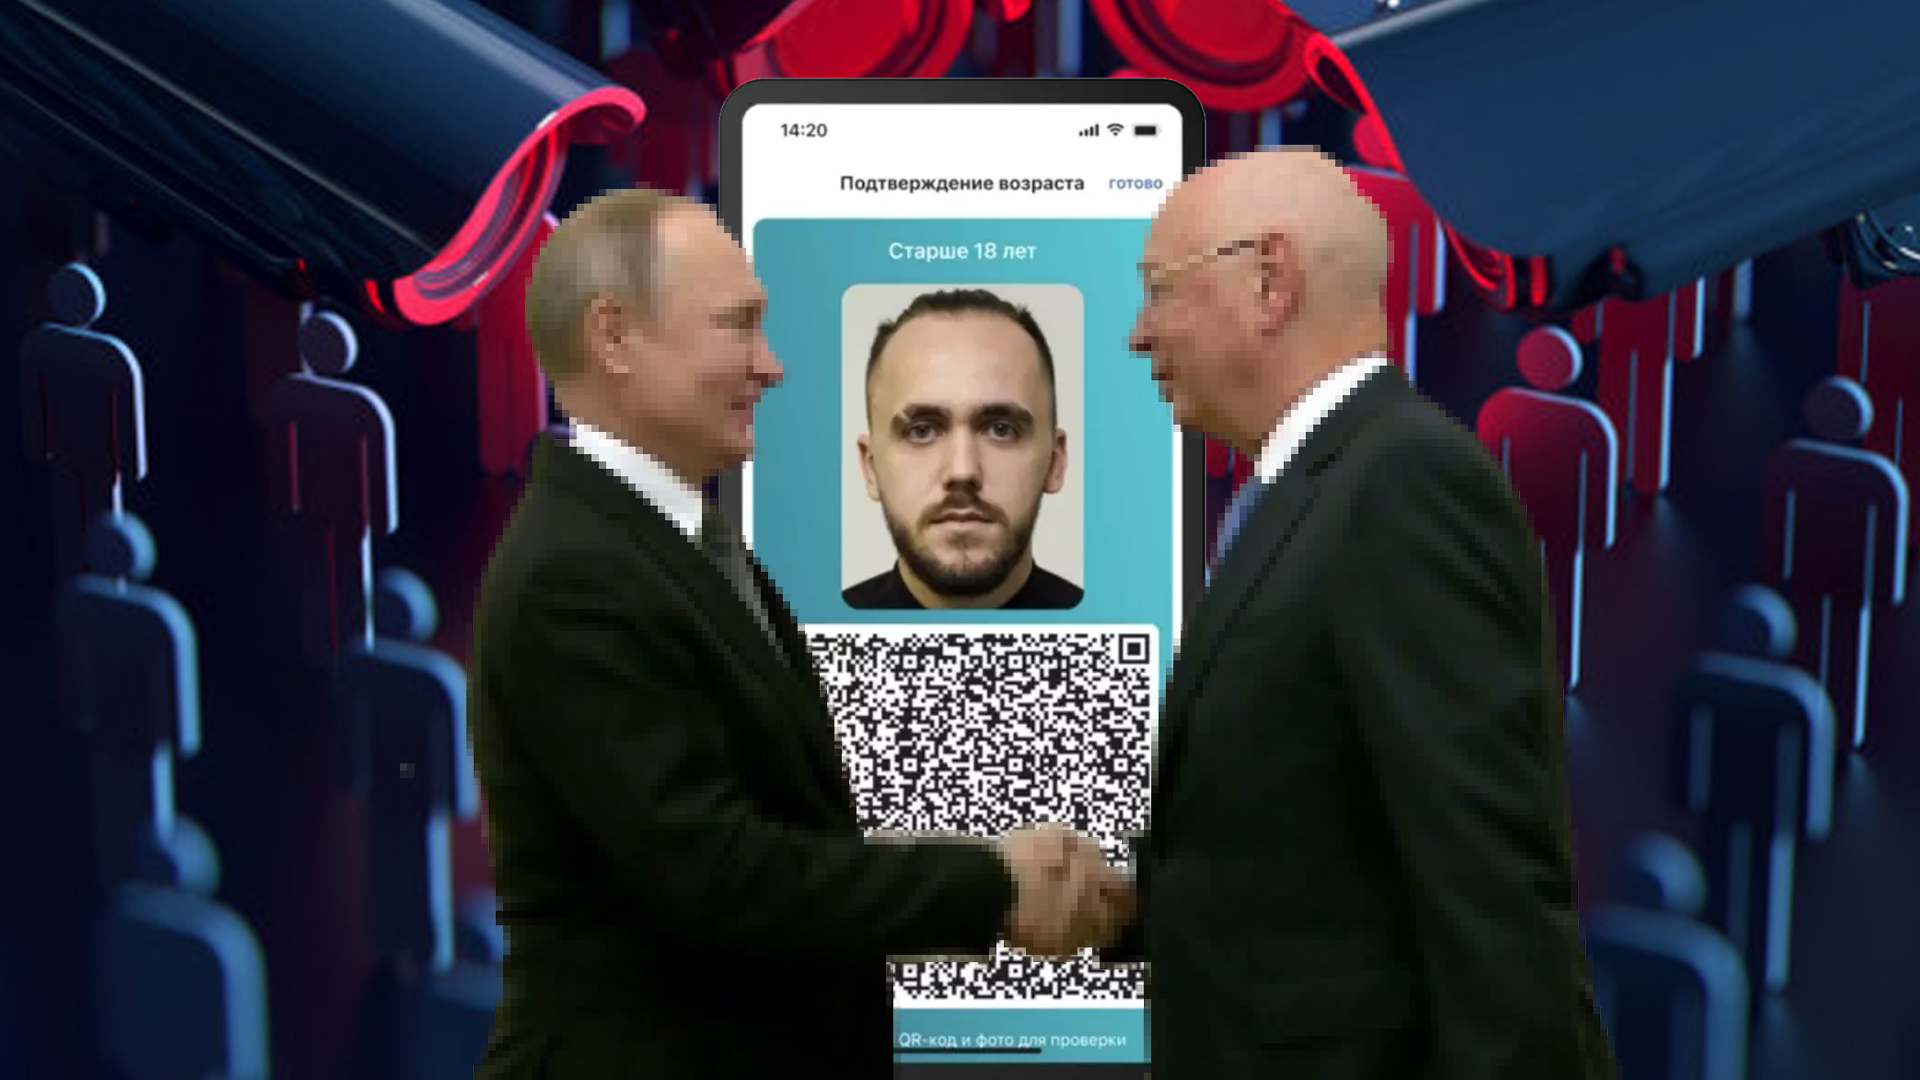 Цифровой мультипаспорт в смартфоне: Шадаев убедил Путина издать Указ о виртуальном биометрическом удостоверении личности